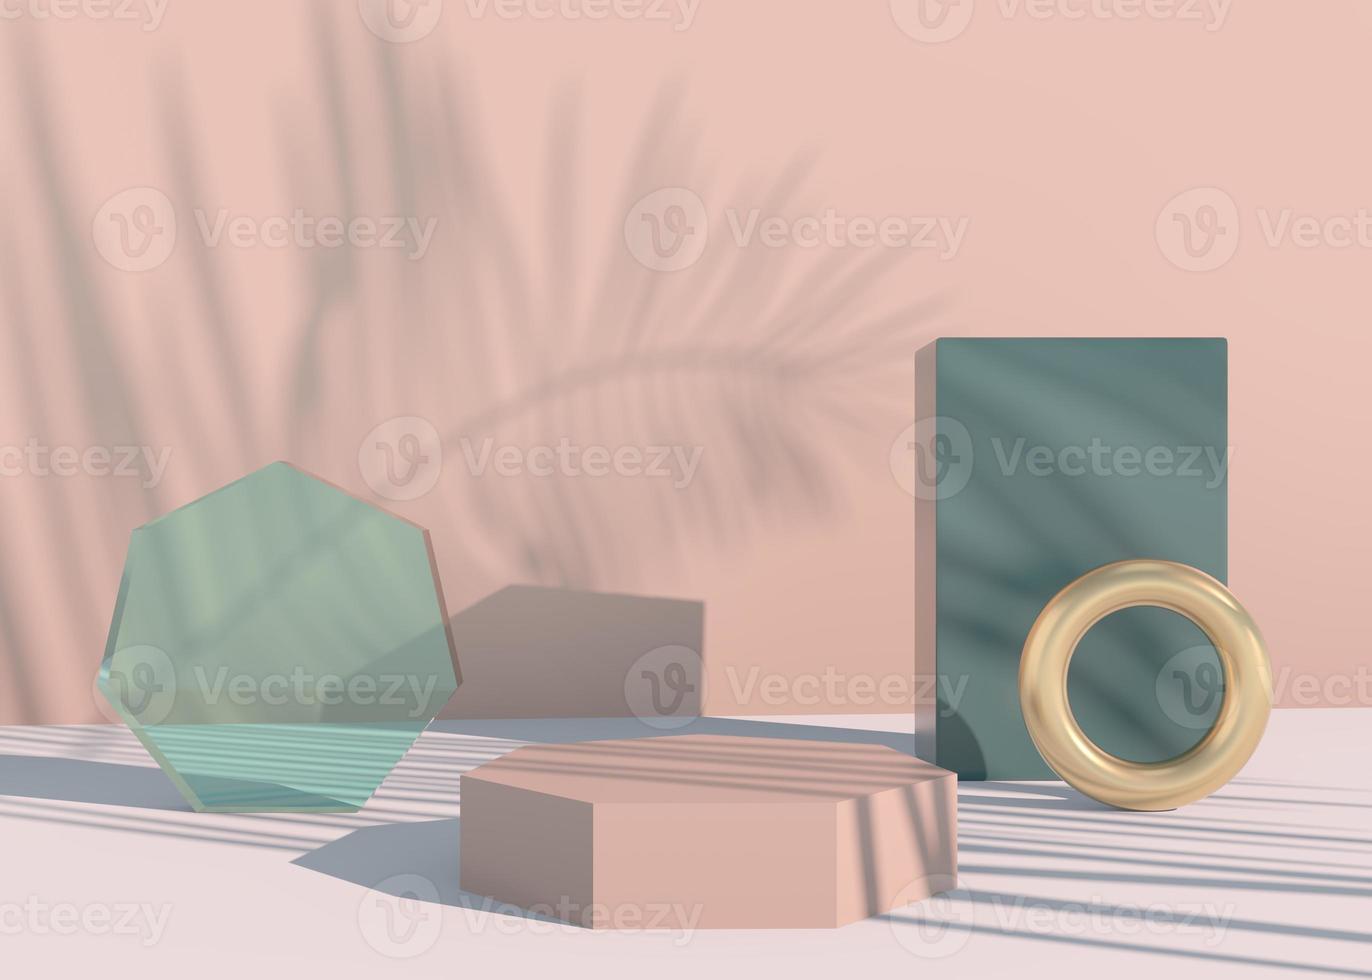 Podio con sombras de hojas de palma para presentación de productos cosméticos. maqueta de fondo de pedestal de escaparate vacío. Render 3D. foto